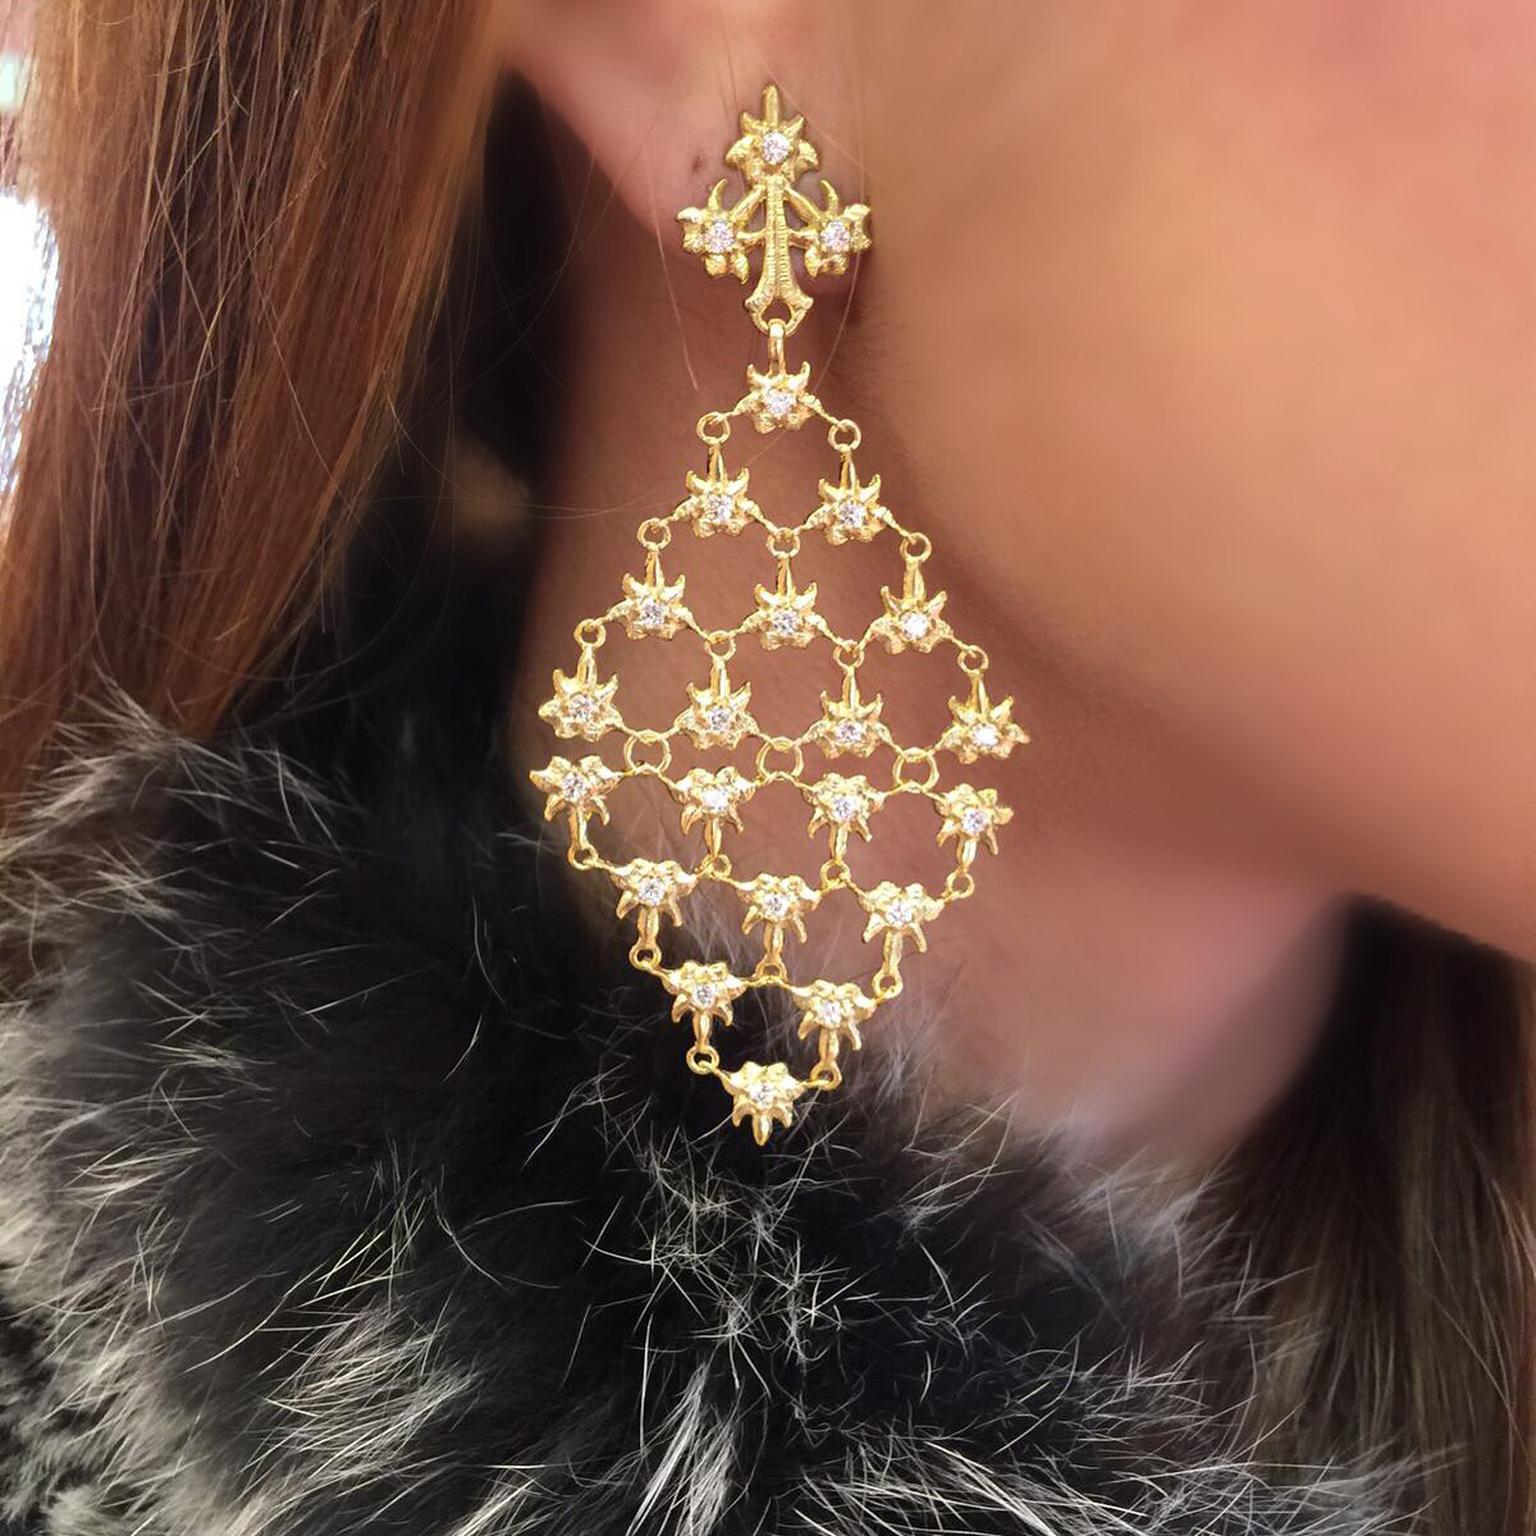 LaLaounis Aurelia earrings